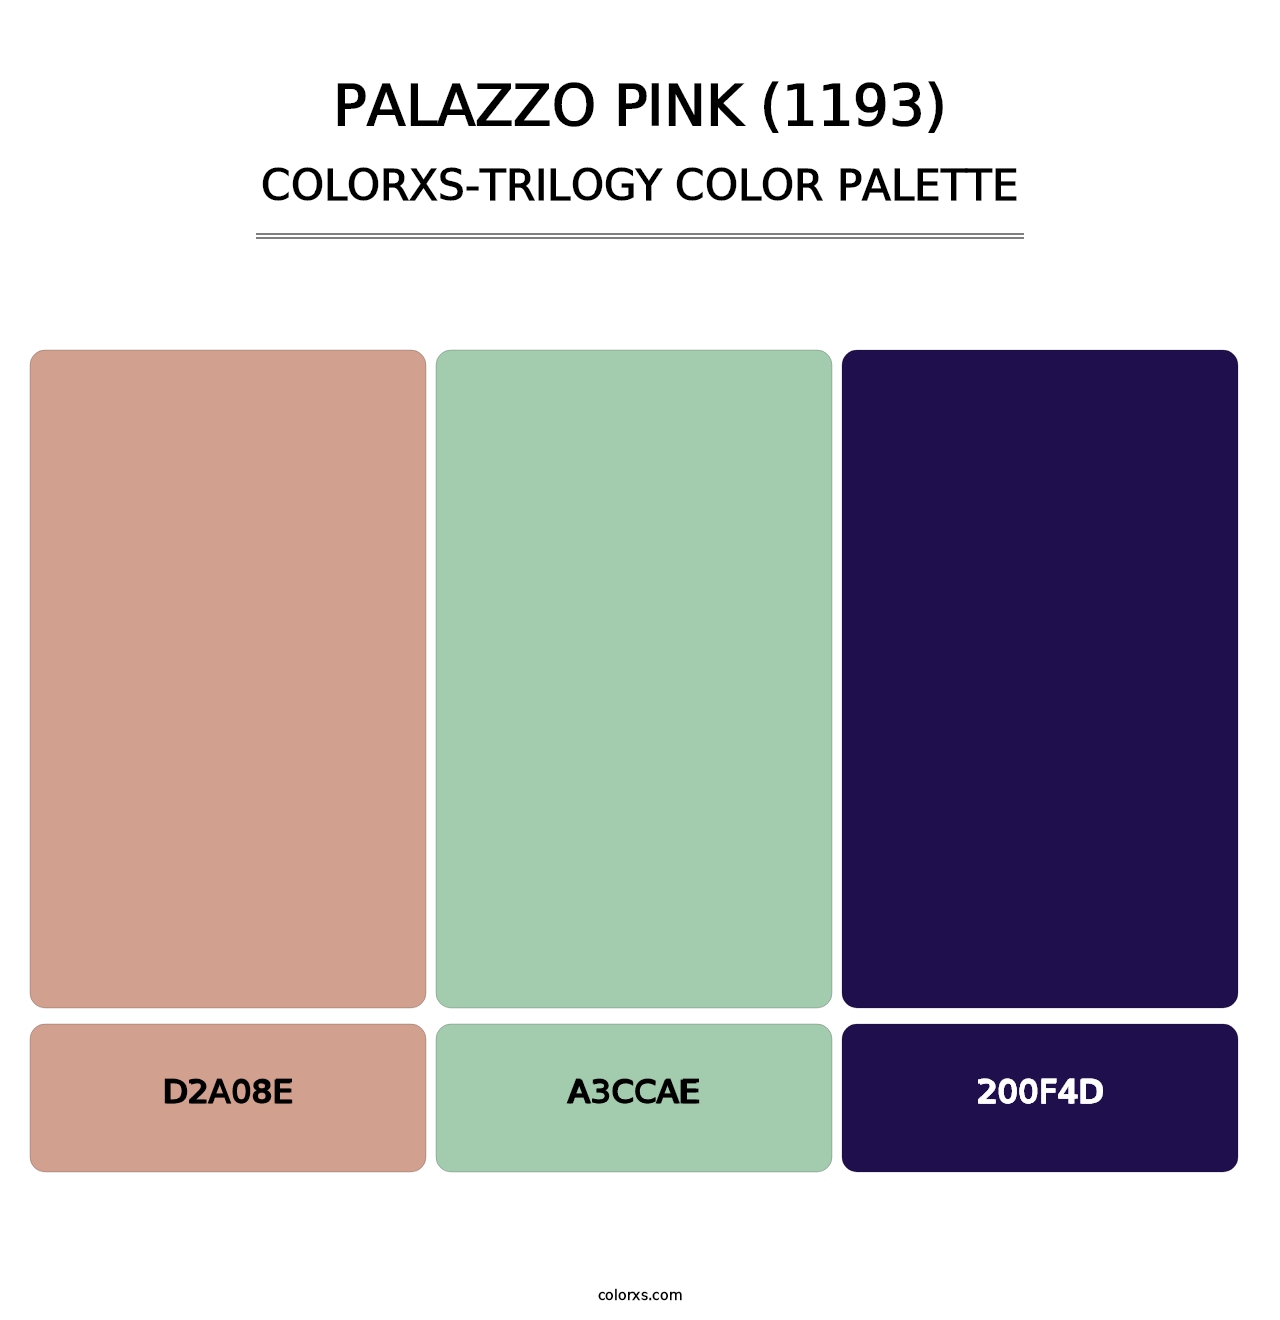 Palazzo Pink (1193) - Colorxs Trilogy Palette